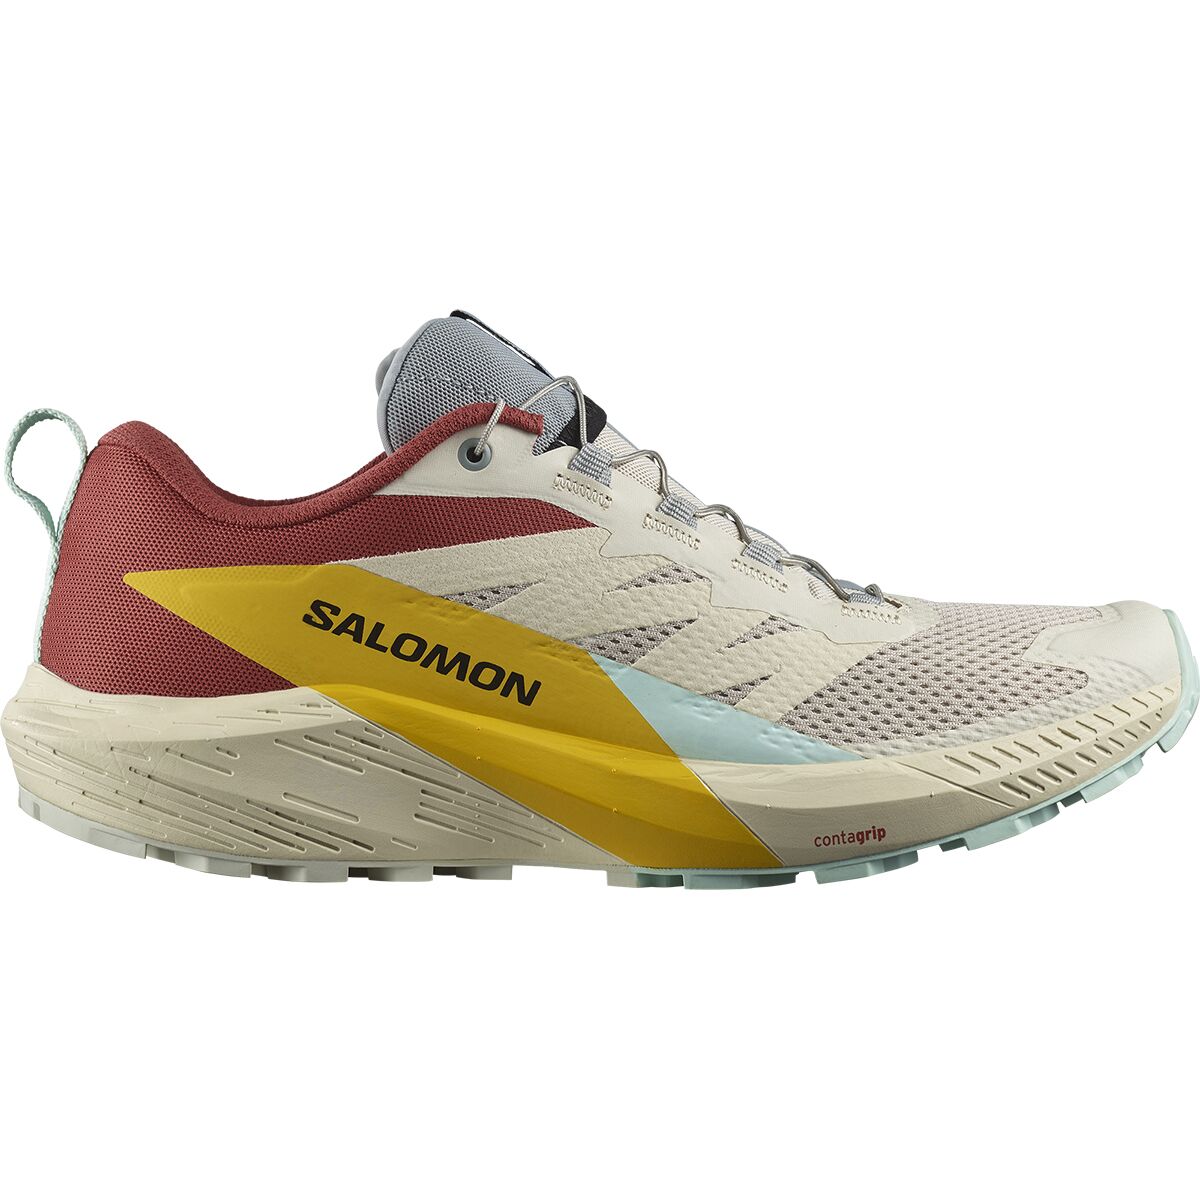 Salomon Sense Ride 5 Trail Shoe - Men's -